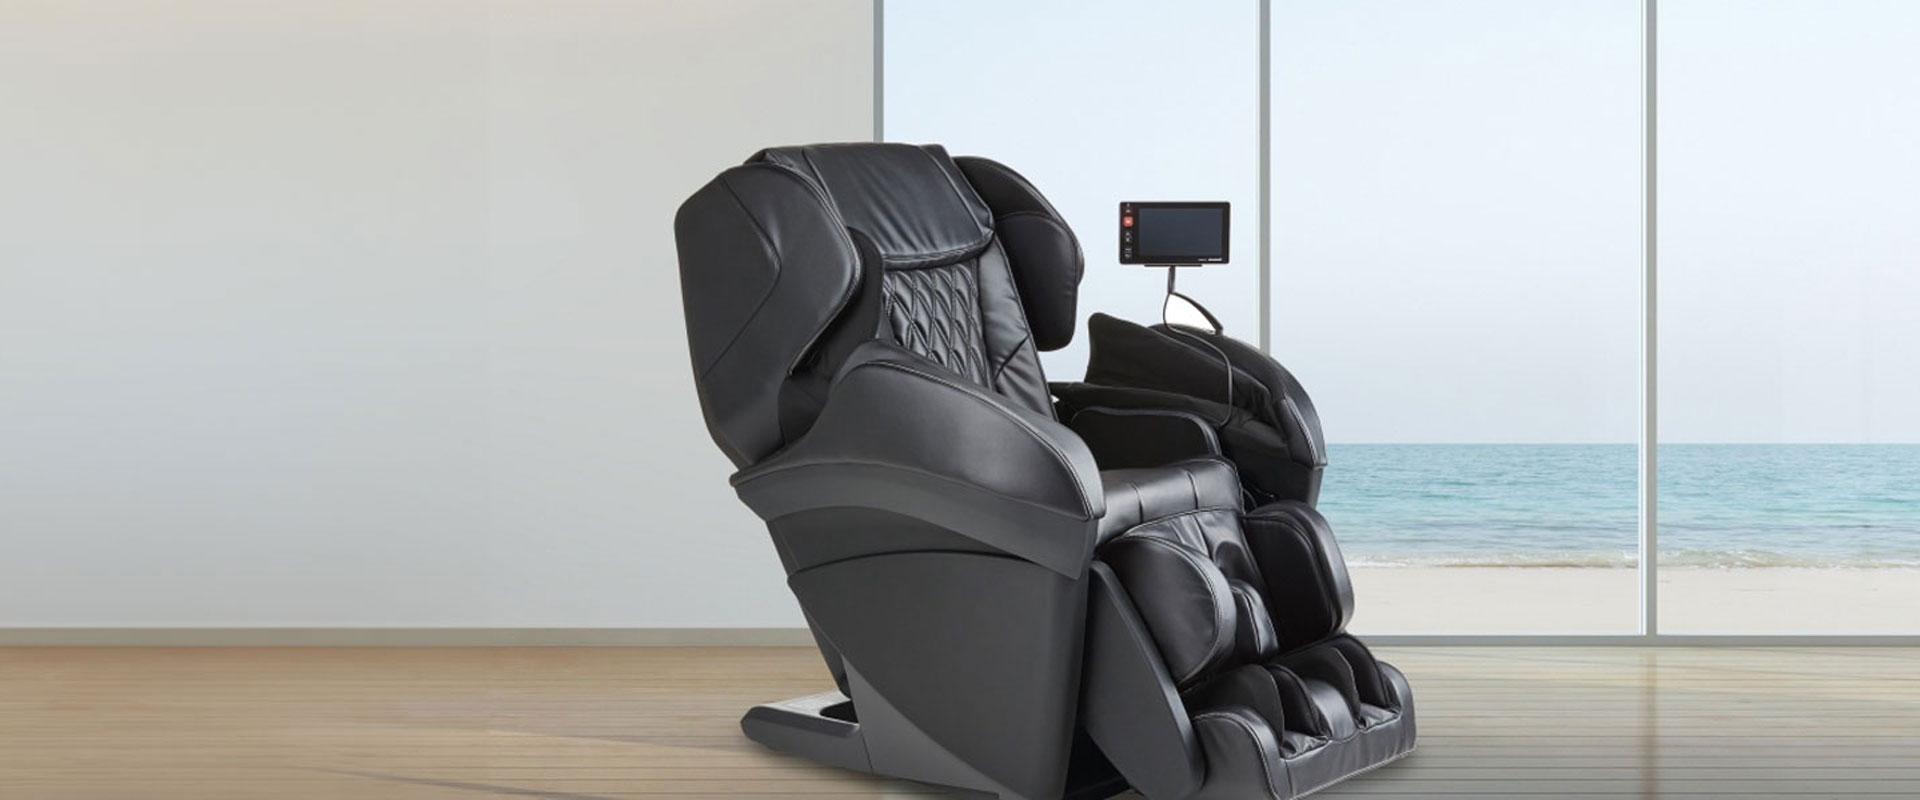 full body massage chair panasonic